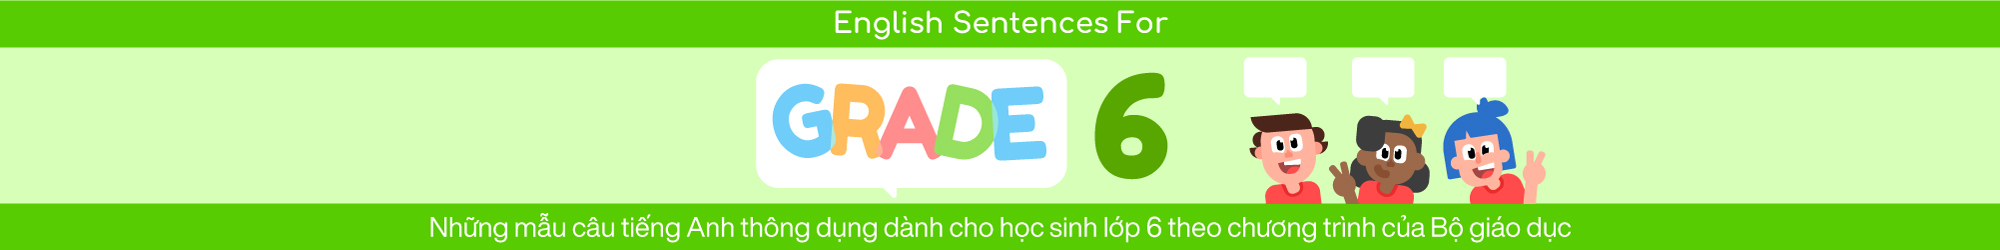 SENTENCES FOR ENGLISH GRADE 6 banner